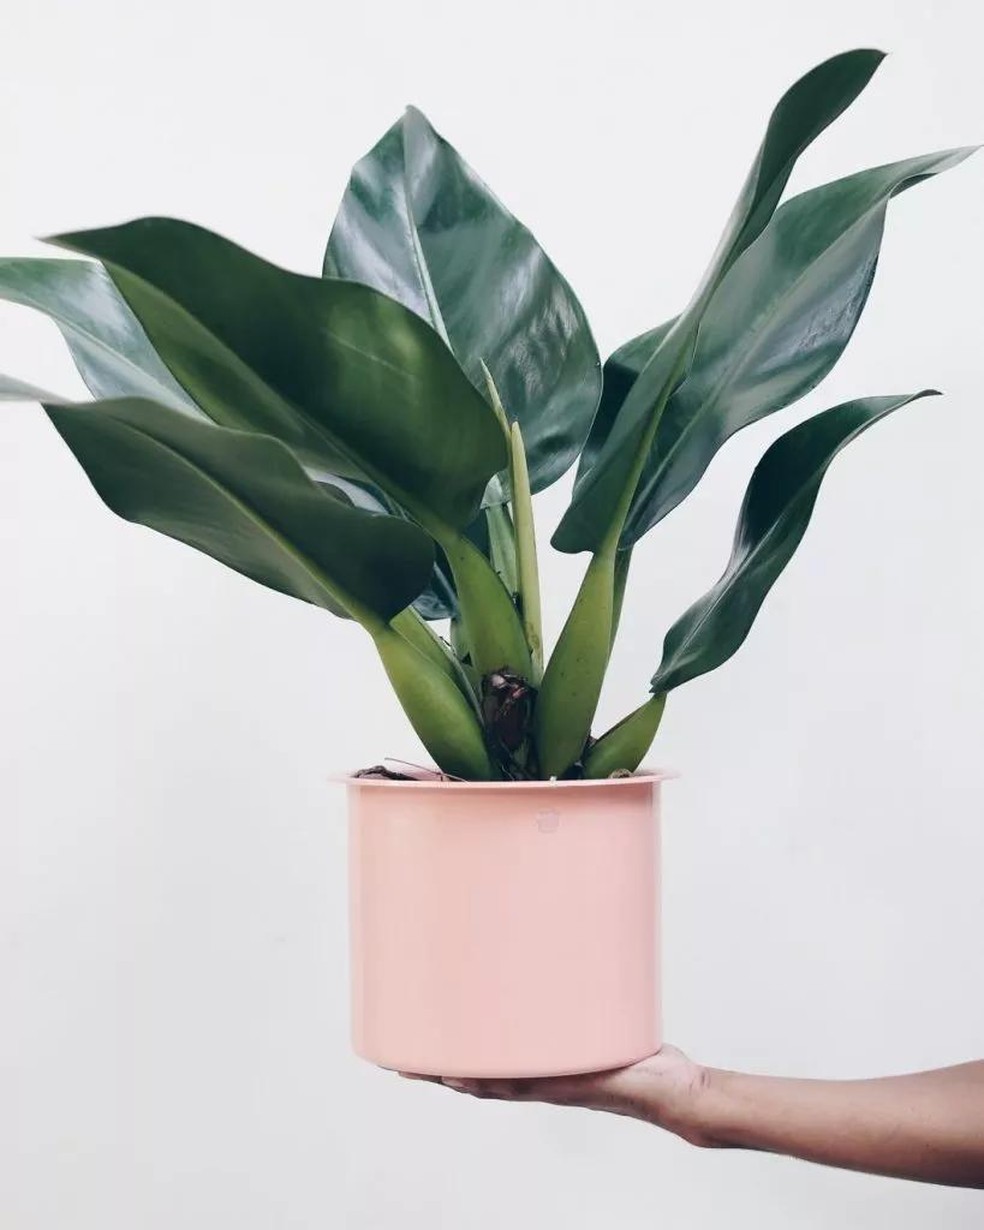 Plantas ornamentais: 10 espécies para ter na sala de estar | Smart | Casa  Vogue